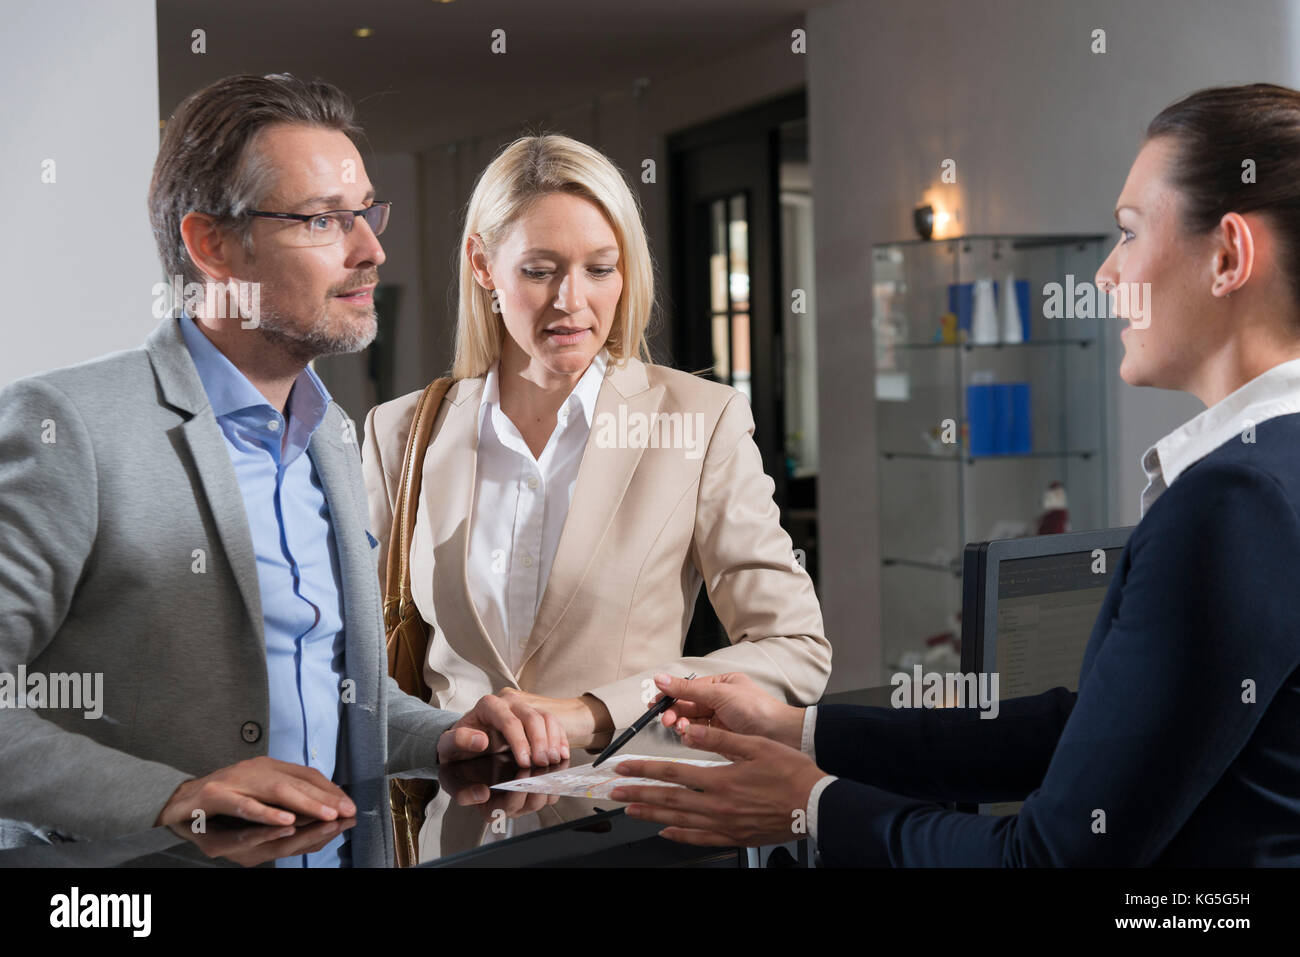 L'homme et la femme dans la conversation avec réceptionniste dans l'hôtel Banque D'Images